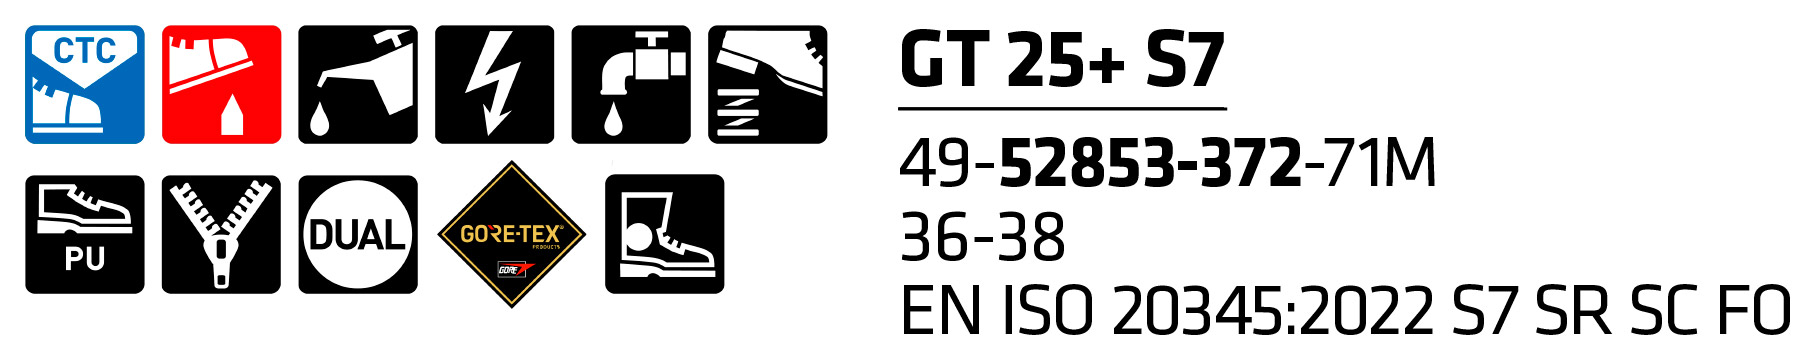 GT 25+ S7